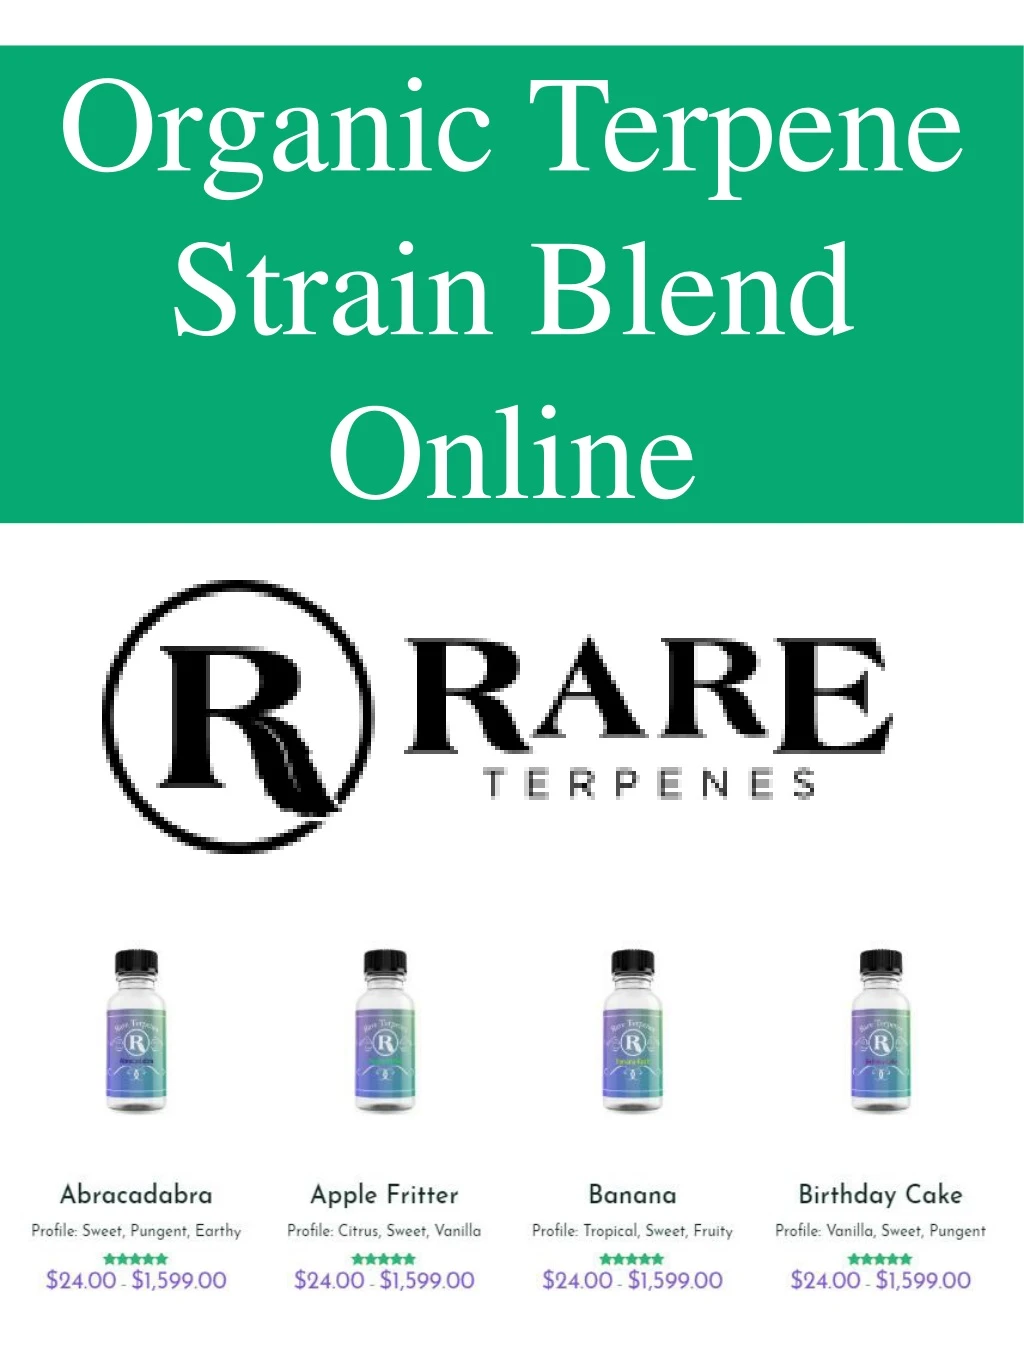 organic terpene strain blend online